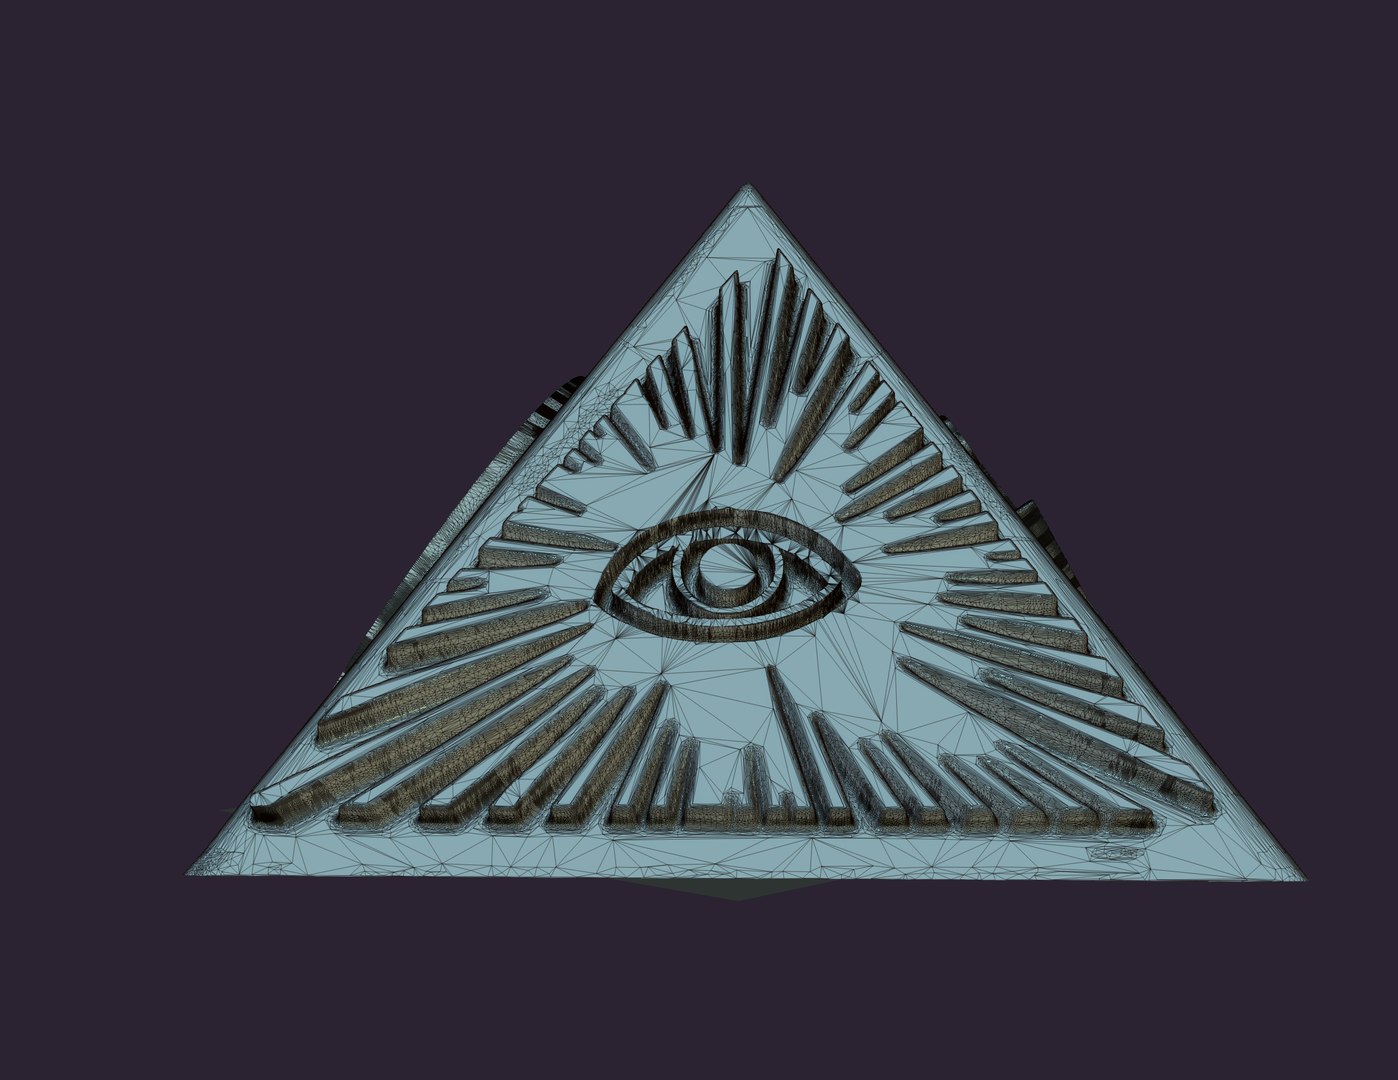 Masonic illuminati pyramid 3D model https://p.turbosquid.com/ts-thumb/Qu/iXUb8s/db/00/jpg/1664570056/1920x1080/fit_q87/c4a0f6bd521a59aef35f34636b5beacd84729b1a/00.jpg